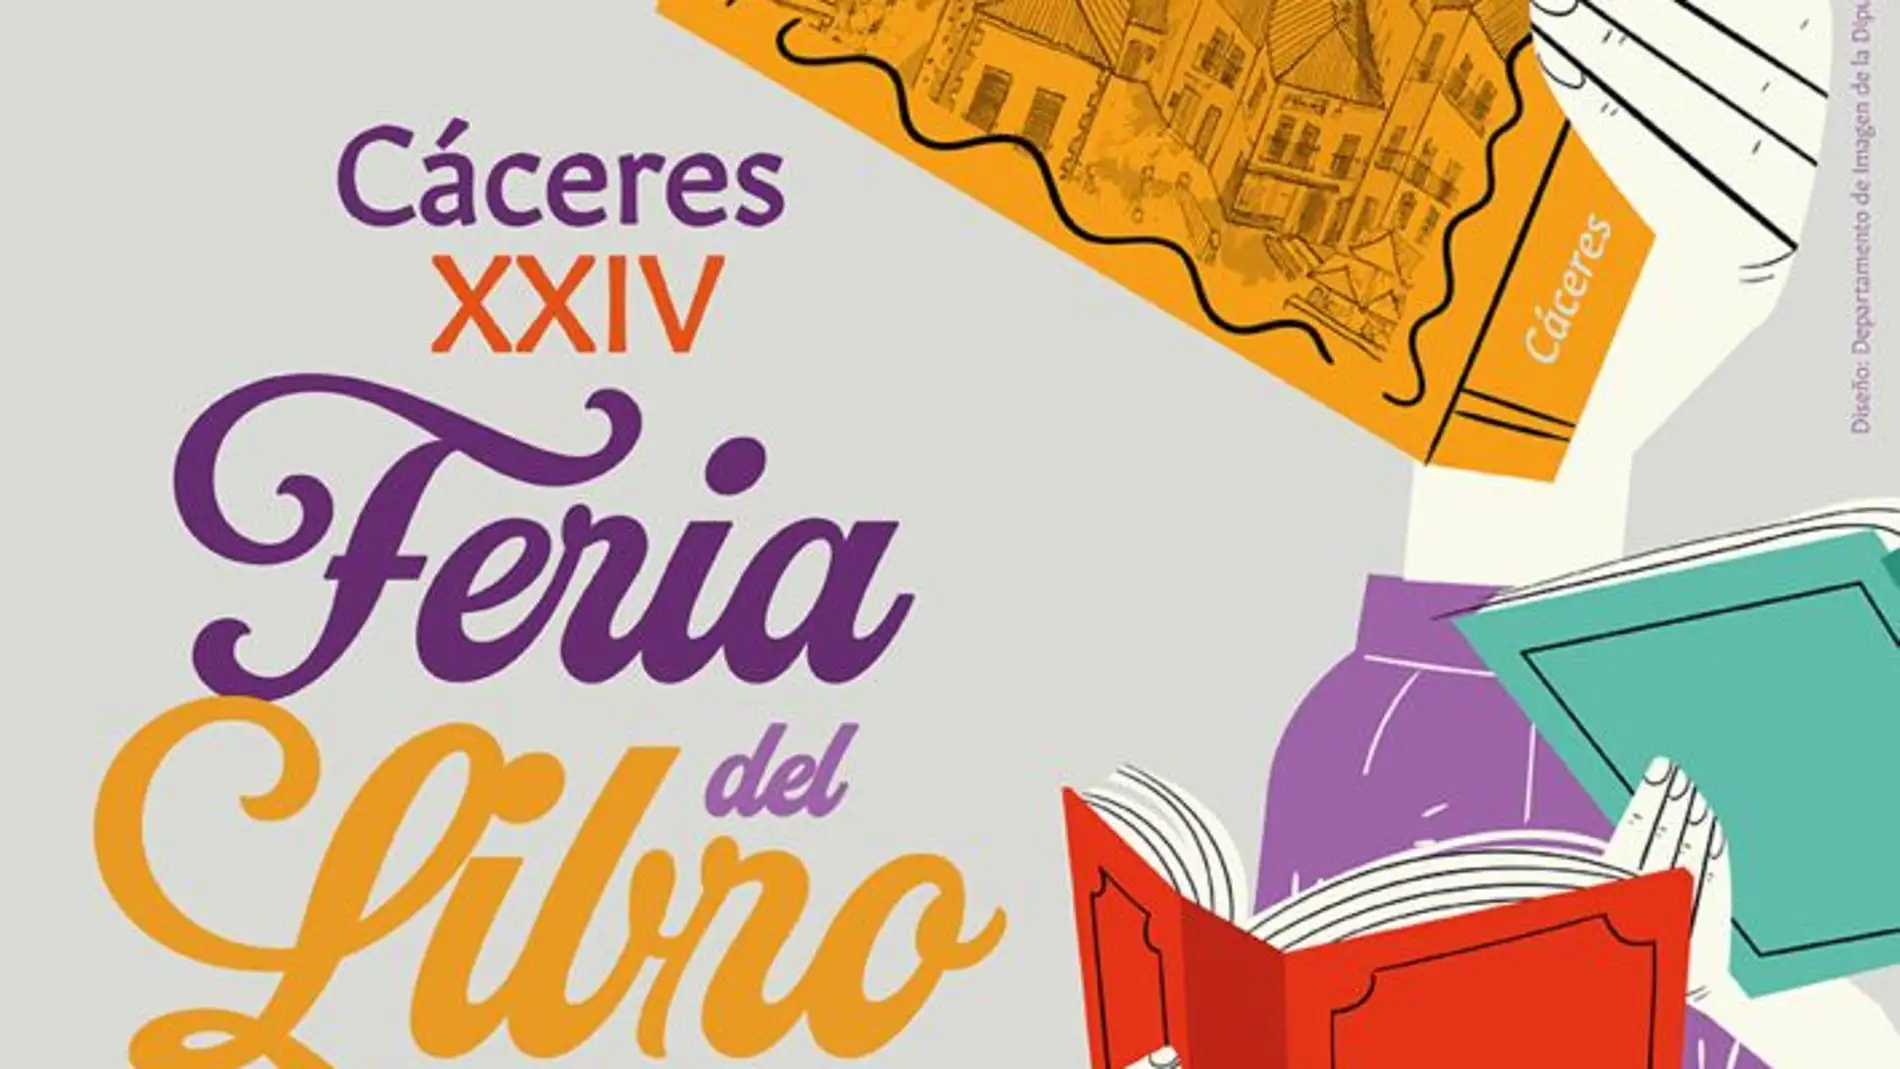 Landero, Pérez Gellida y Pablo Vierci estarán presentes en la XXIV Feria del Libro de Cáceres del 19 al 30 de abril